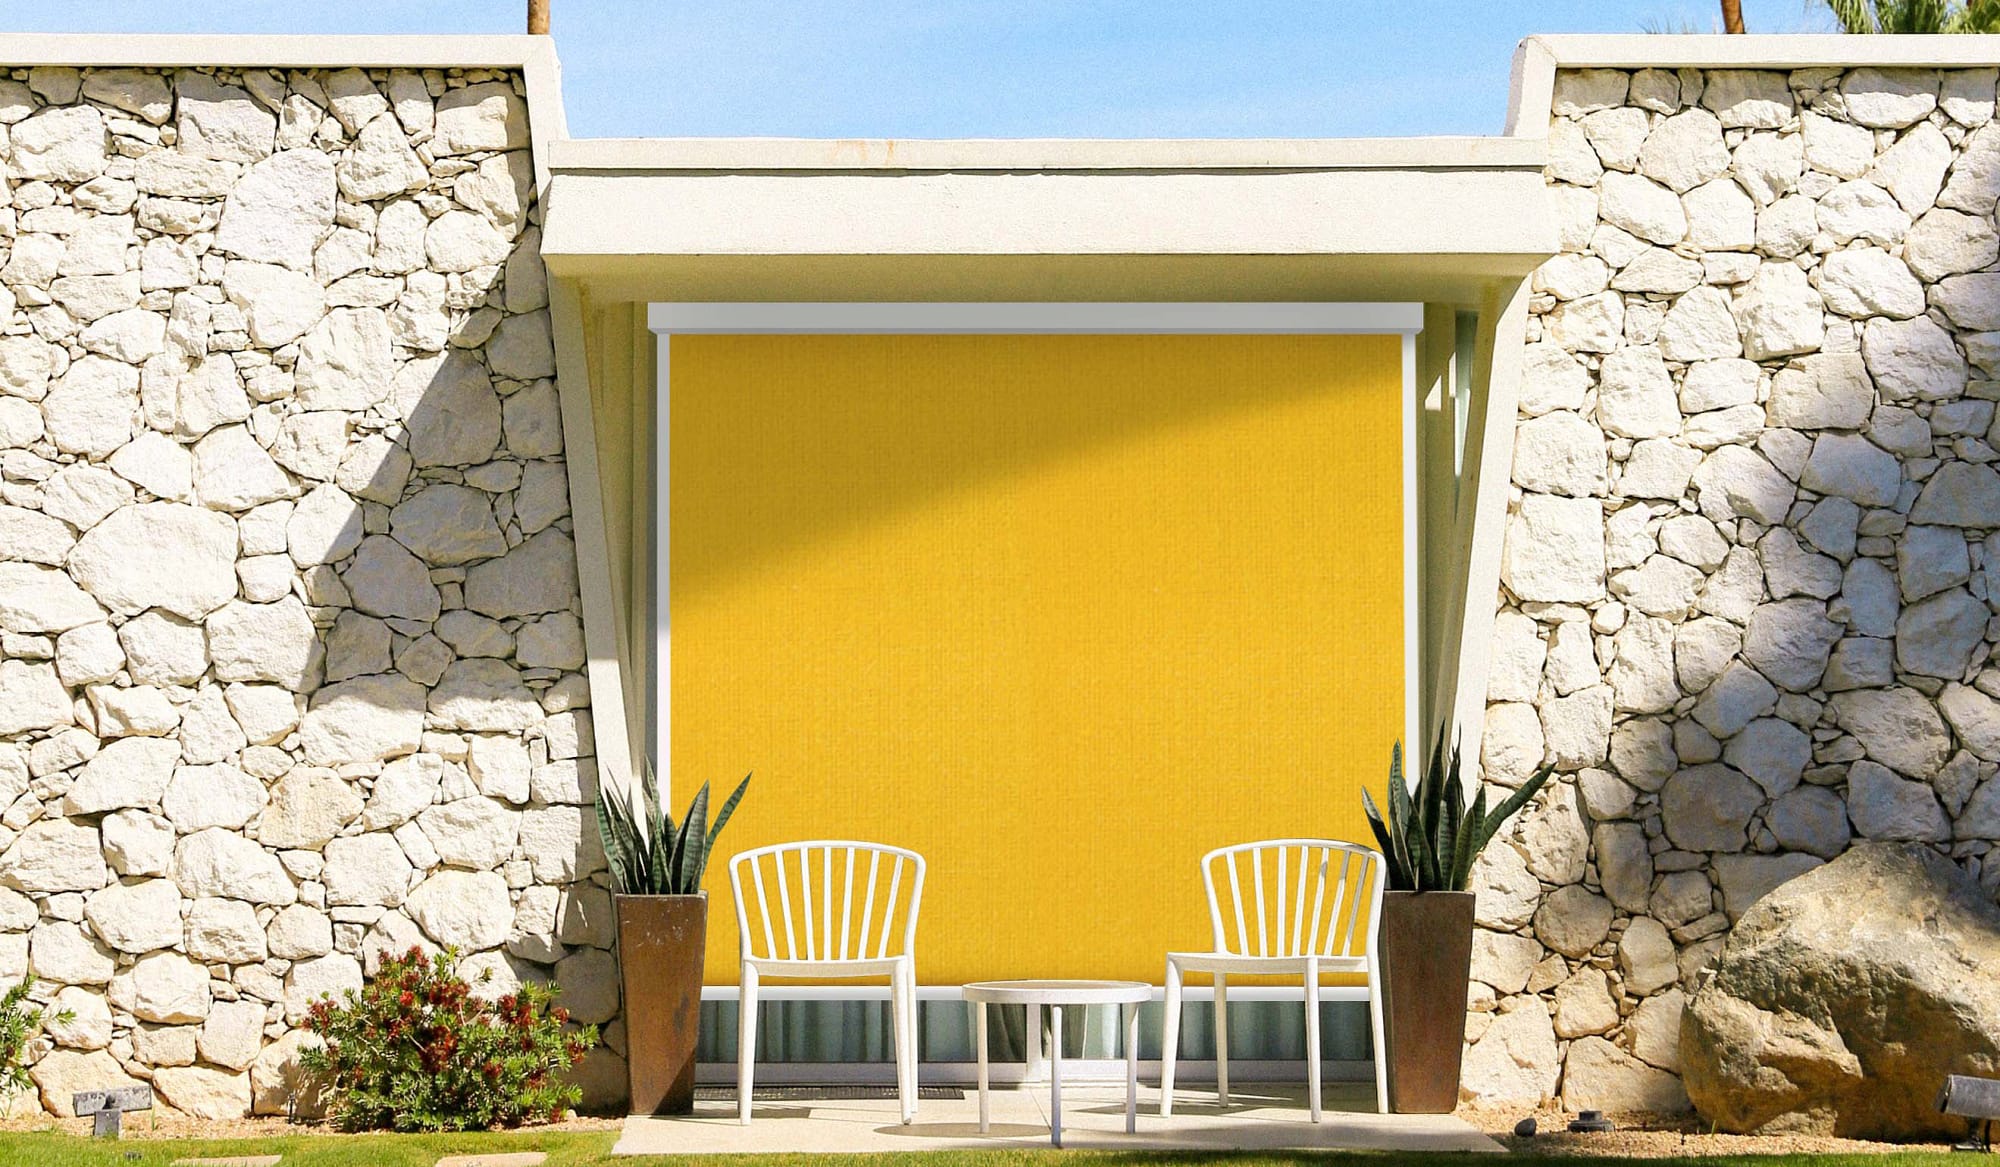 Vue extérieur d'une baie vitrée avec une store zip jaune de la marque flip, mur en pierre et palmiers